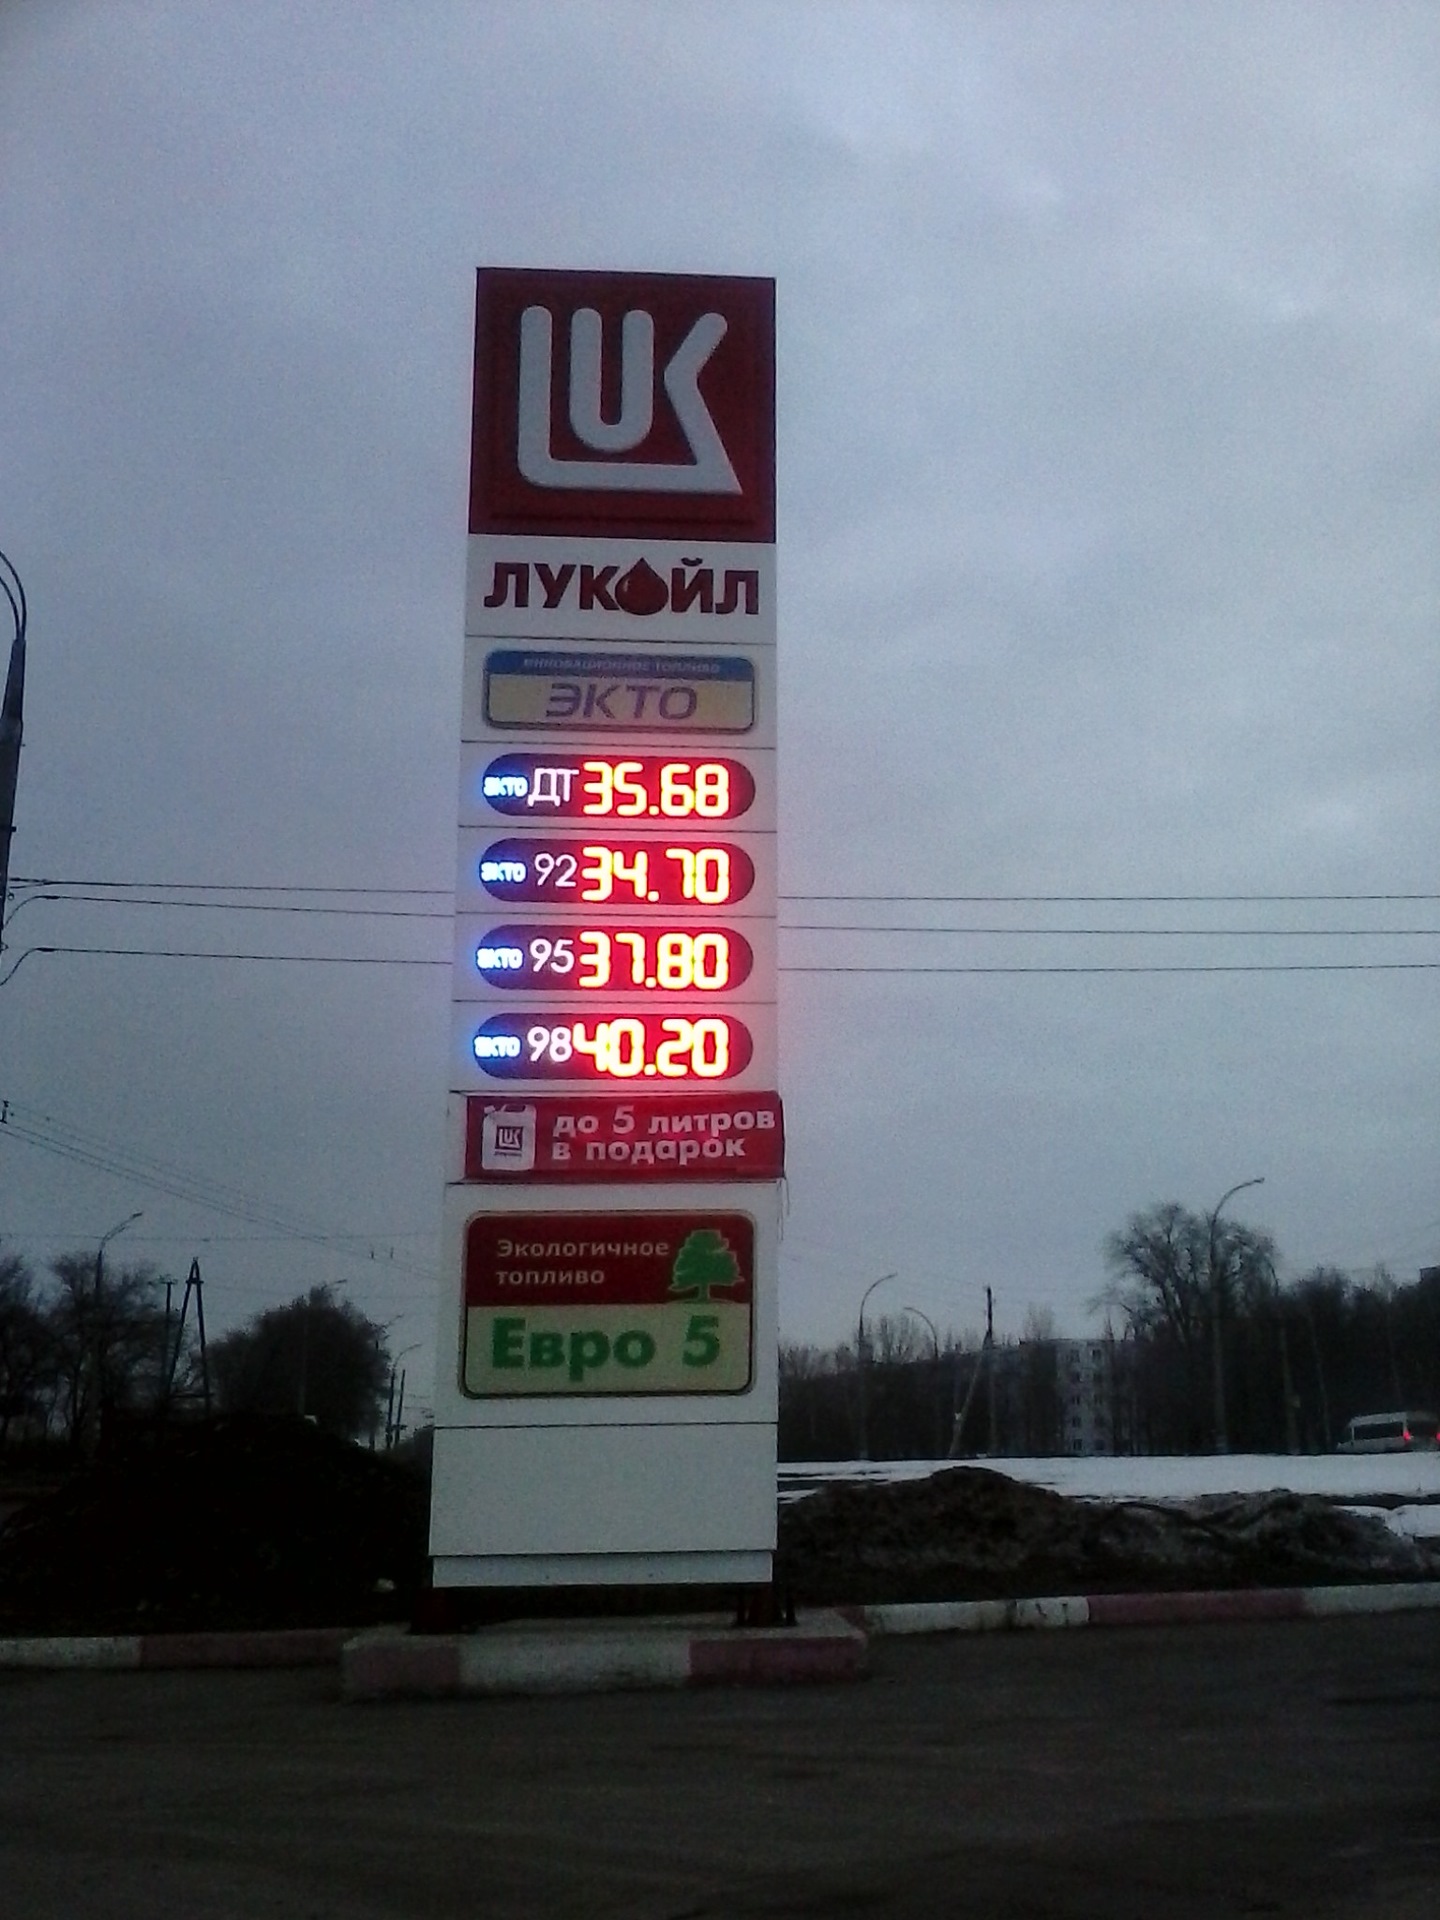 Цена 95 бензина в беларуси. Бензин в 2012 году. Ценник на бензин. Бензин 95 в 2012 году. Бензин в 2012 году цена.